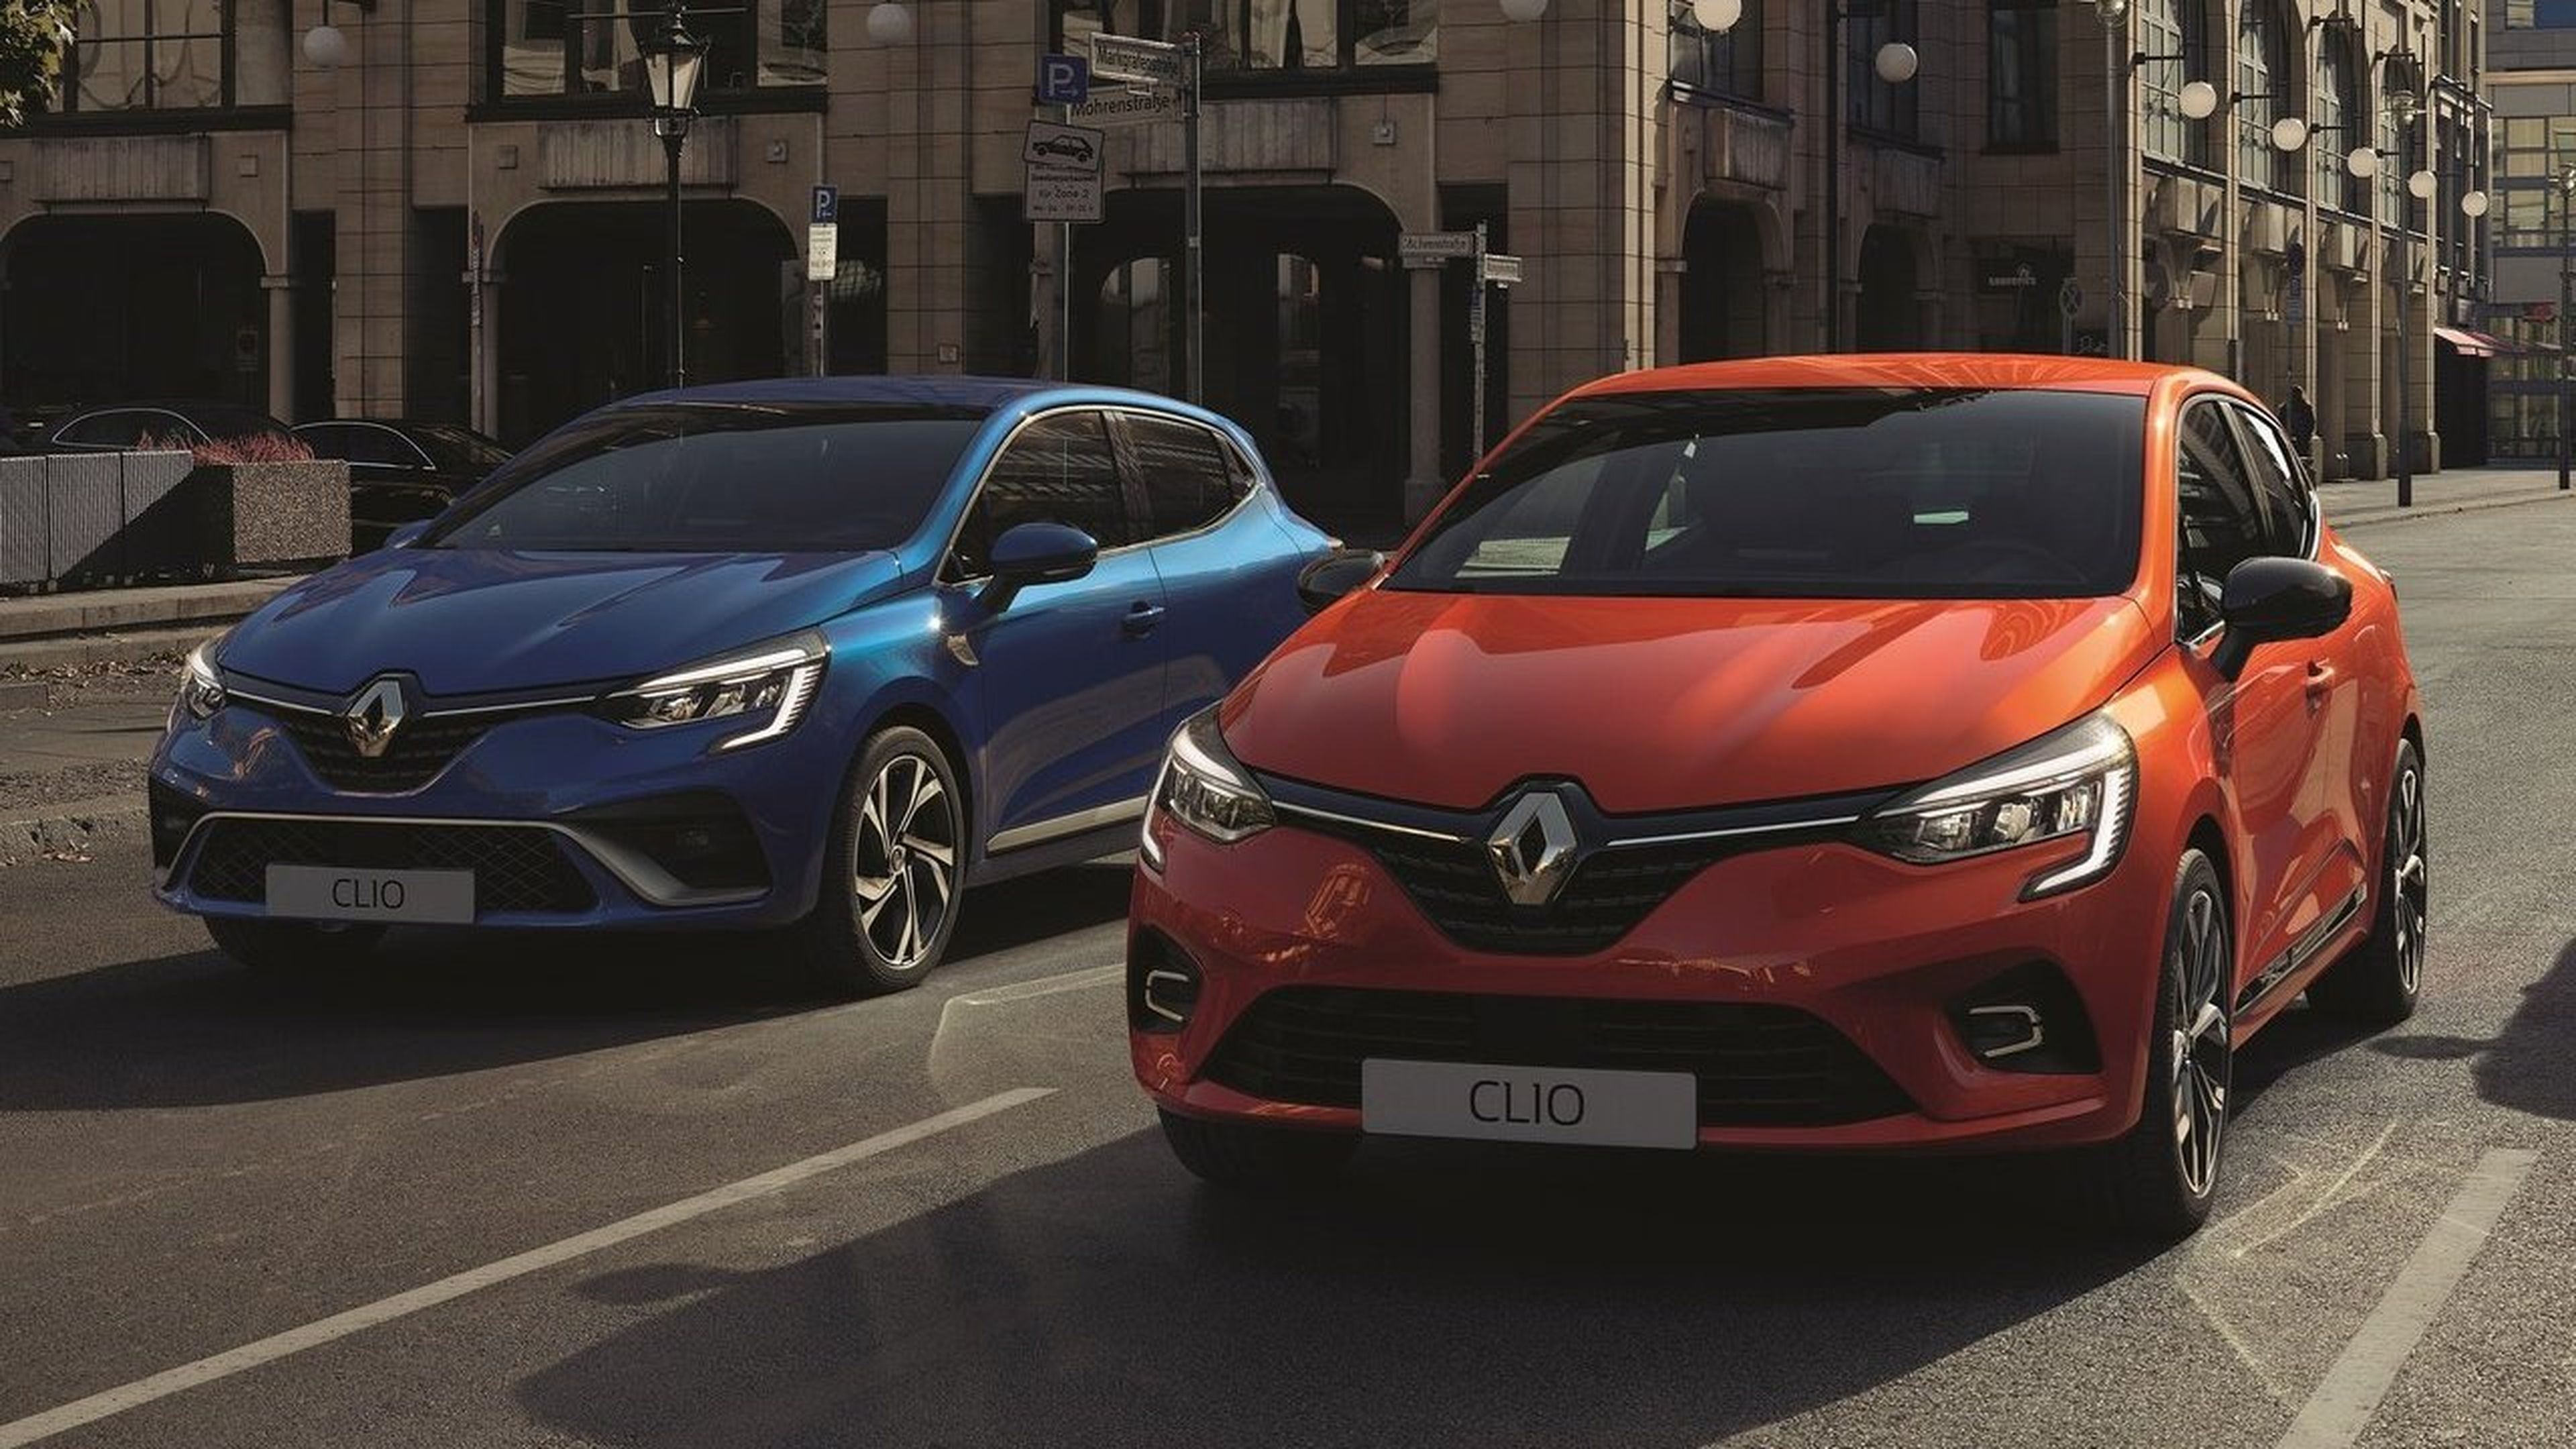 7 virtudes 2 defectos Renault Clio 2020